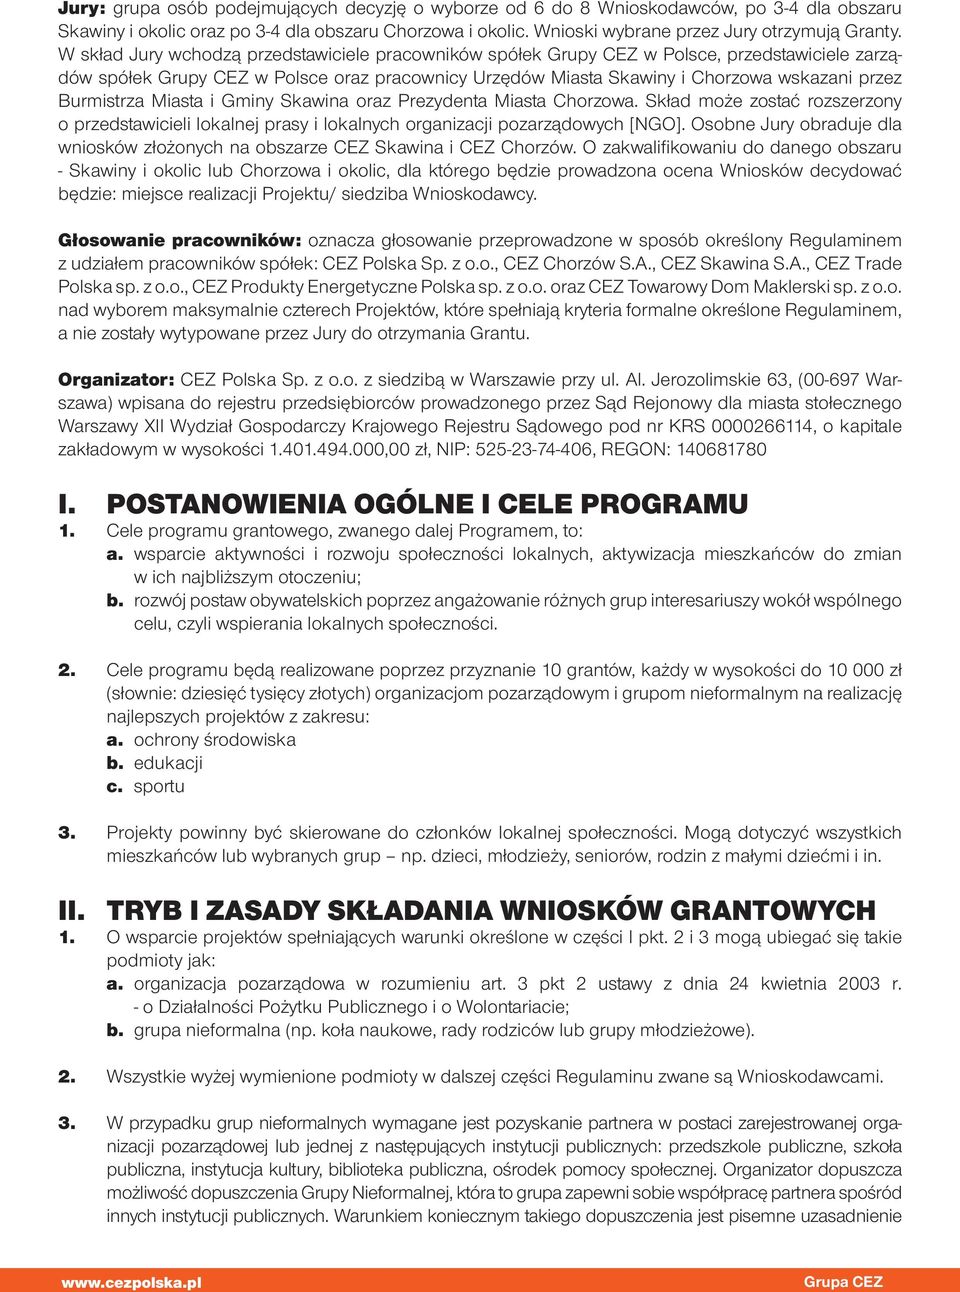 Burmistrza Miasta i Gminy Skawina oraz Prezydenta Miasta Chorzowa. Skład może zostać rozszerzony o przedstawicieli lokalnej prasy i lokalnych organizacji pozarządowych [NGO].